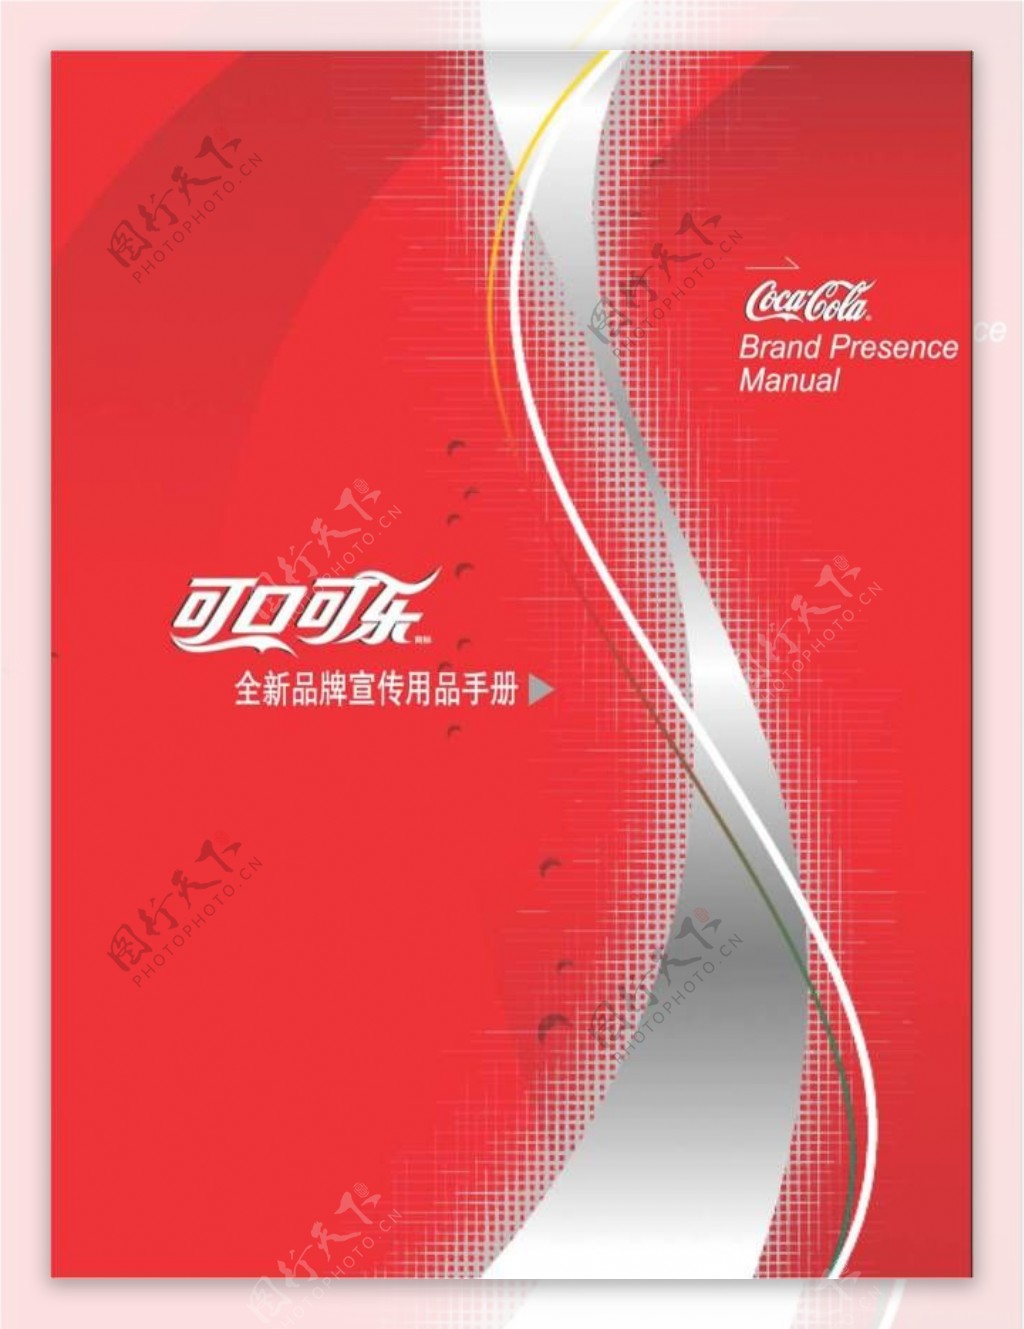 可口可乐全球品牌宣传用品手册